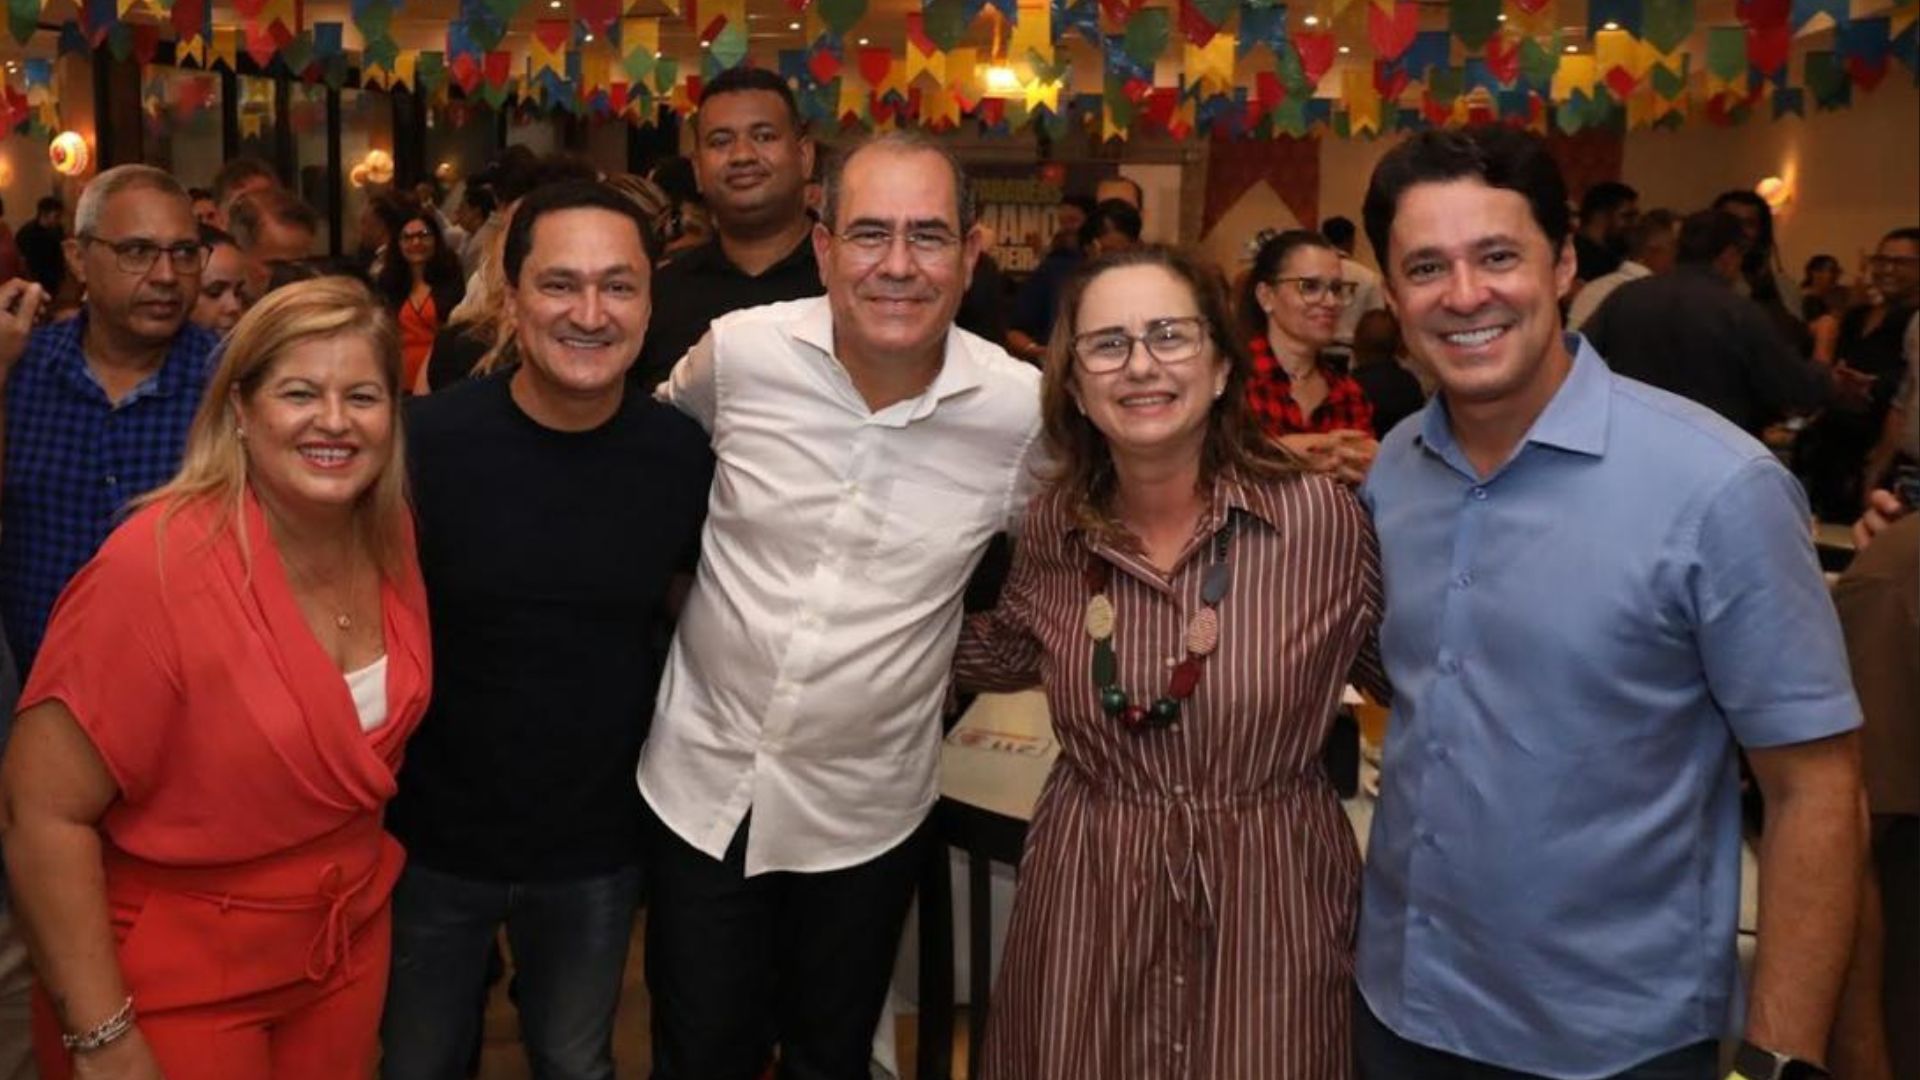 Mano Medeiros comemora aniversário e recebe apoio de lideranças políticas para reeleição em Jaboatão. Foto: Chico Bezerra/PMJG